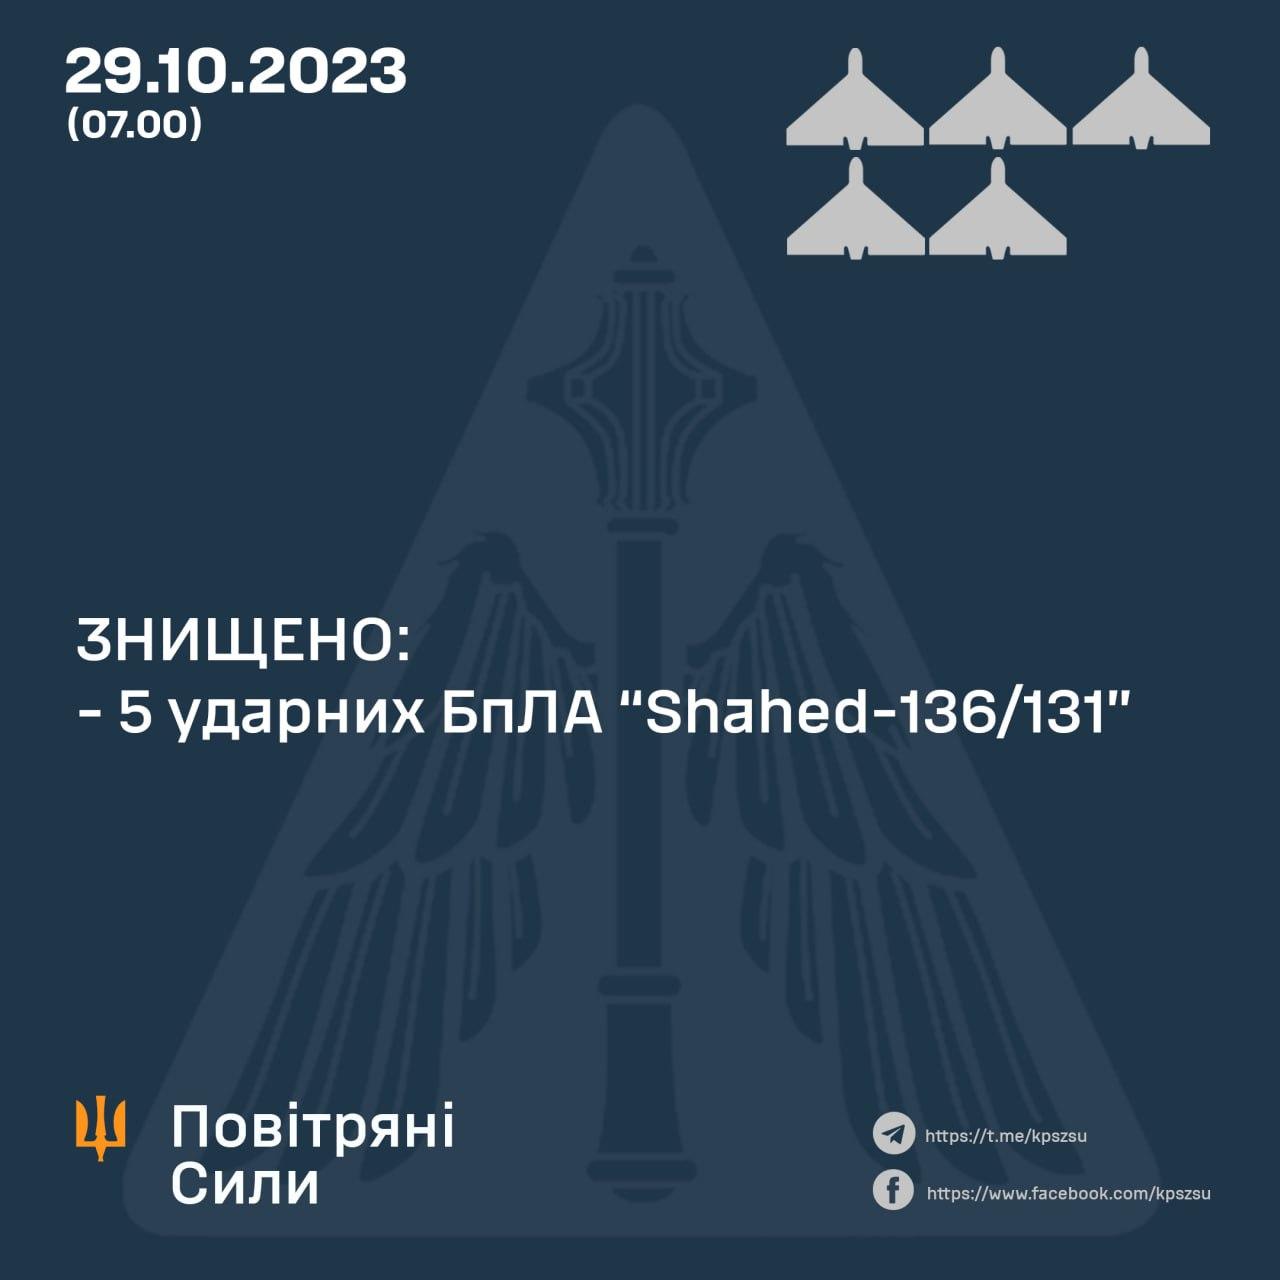 5 шахедів знищили сили оборони України вночі 29 жовтня 2023 року